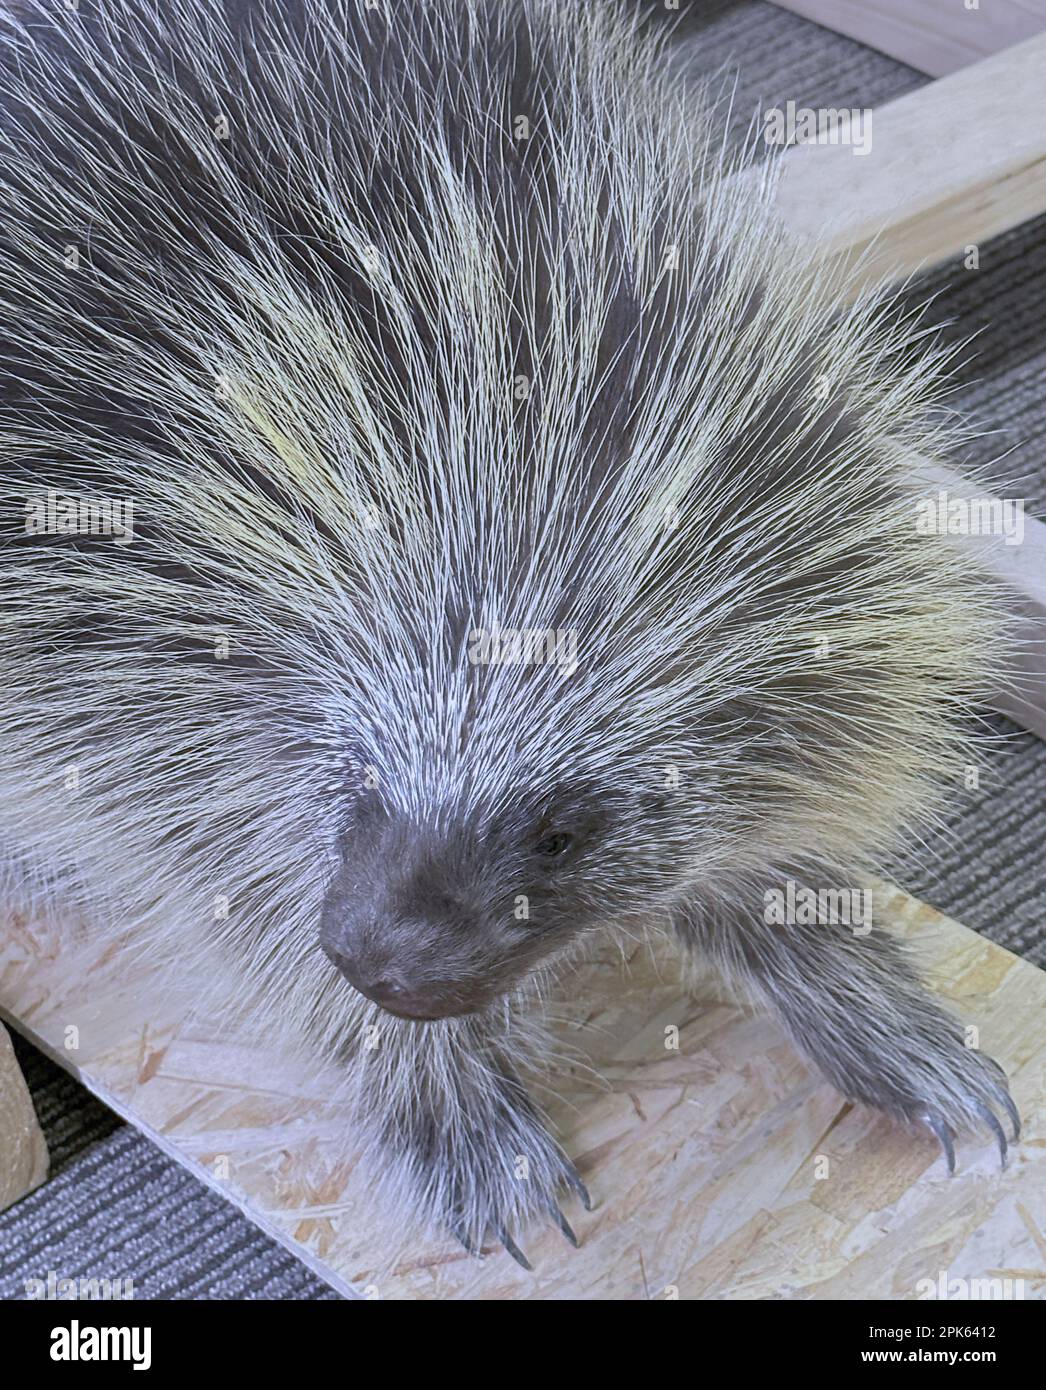 Le porcupine sauvage de taxidermy est exposé en bois. Il a un museau et les yeux sont à l'écoute. Ses quills sont blancs, gris, noirs et il est lié à la polecat. Banque D'Images